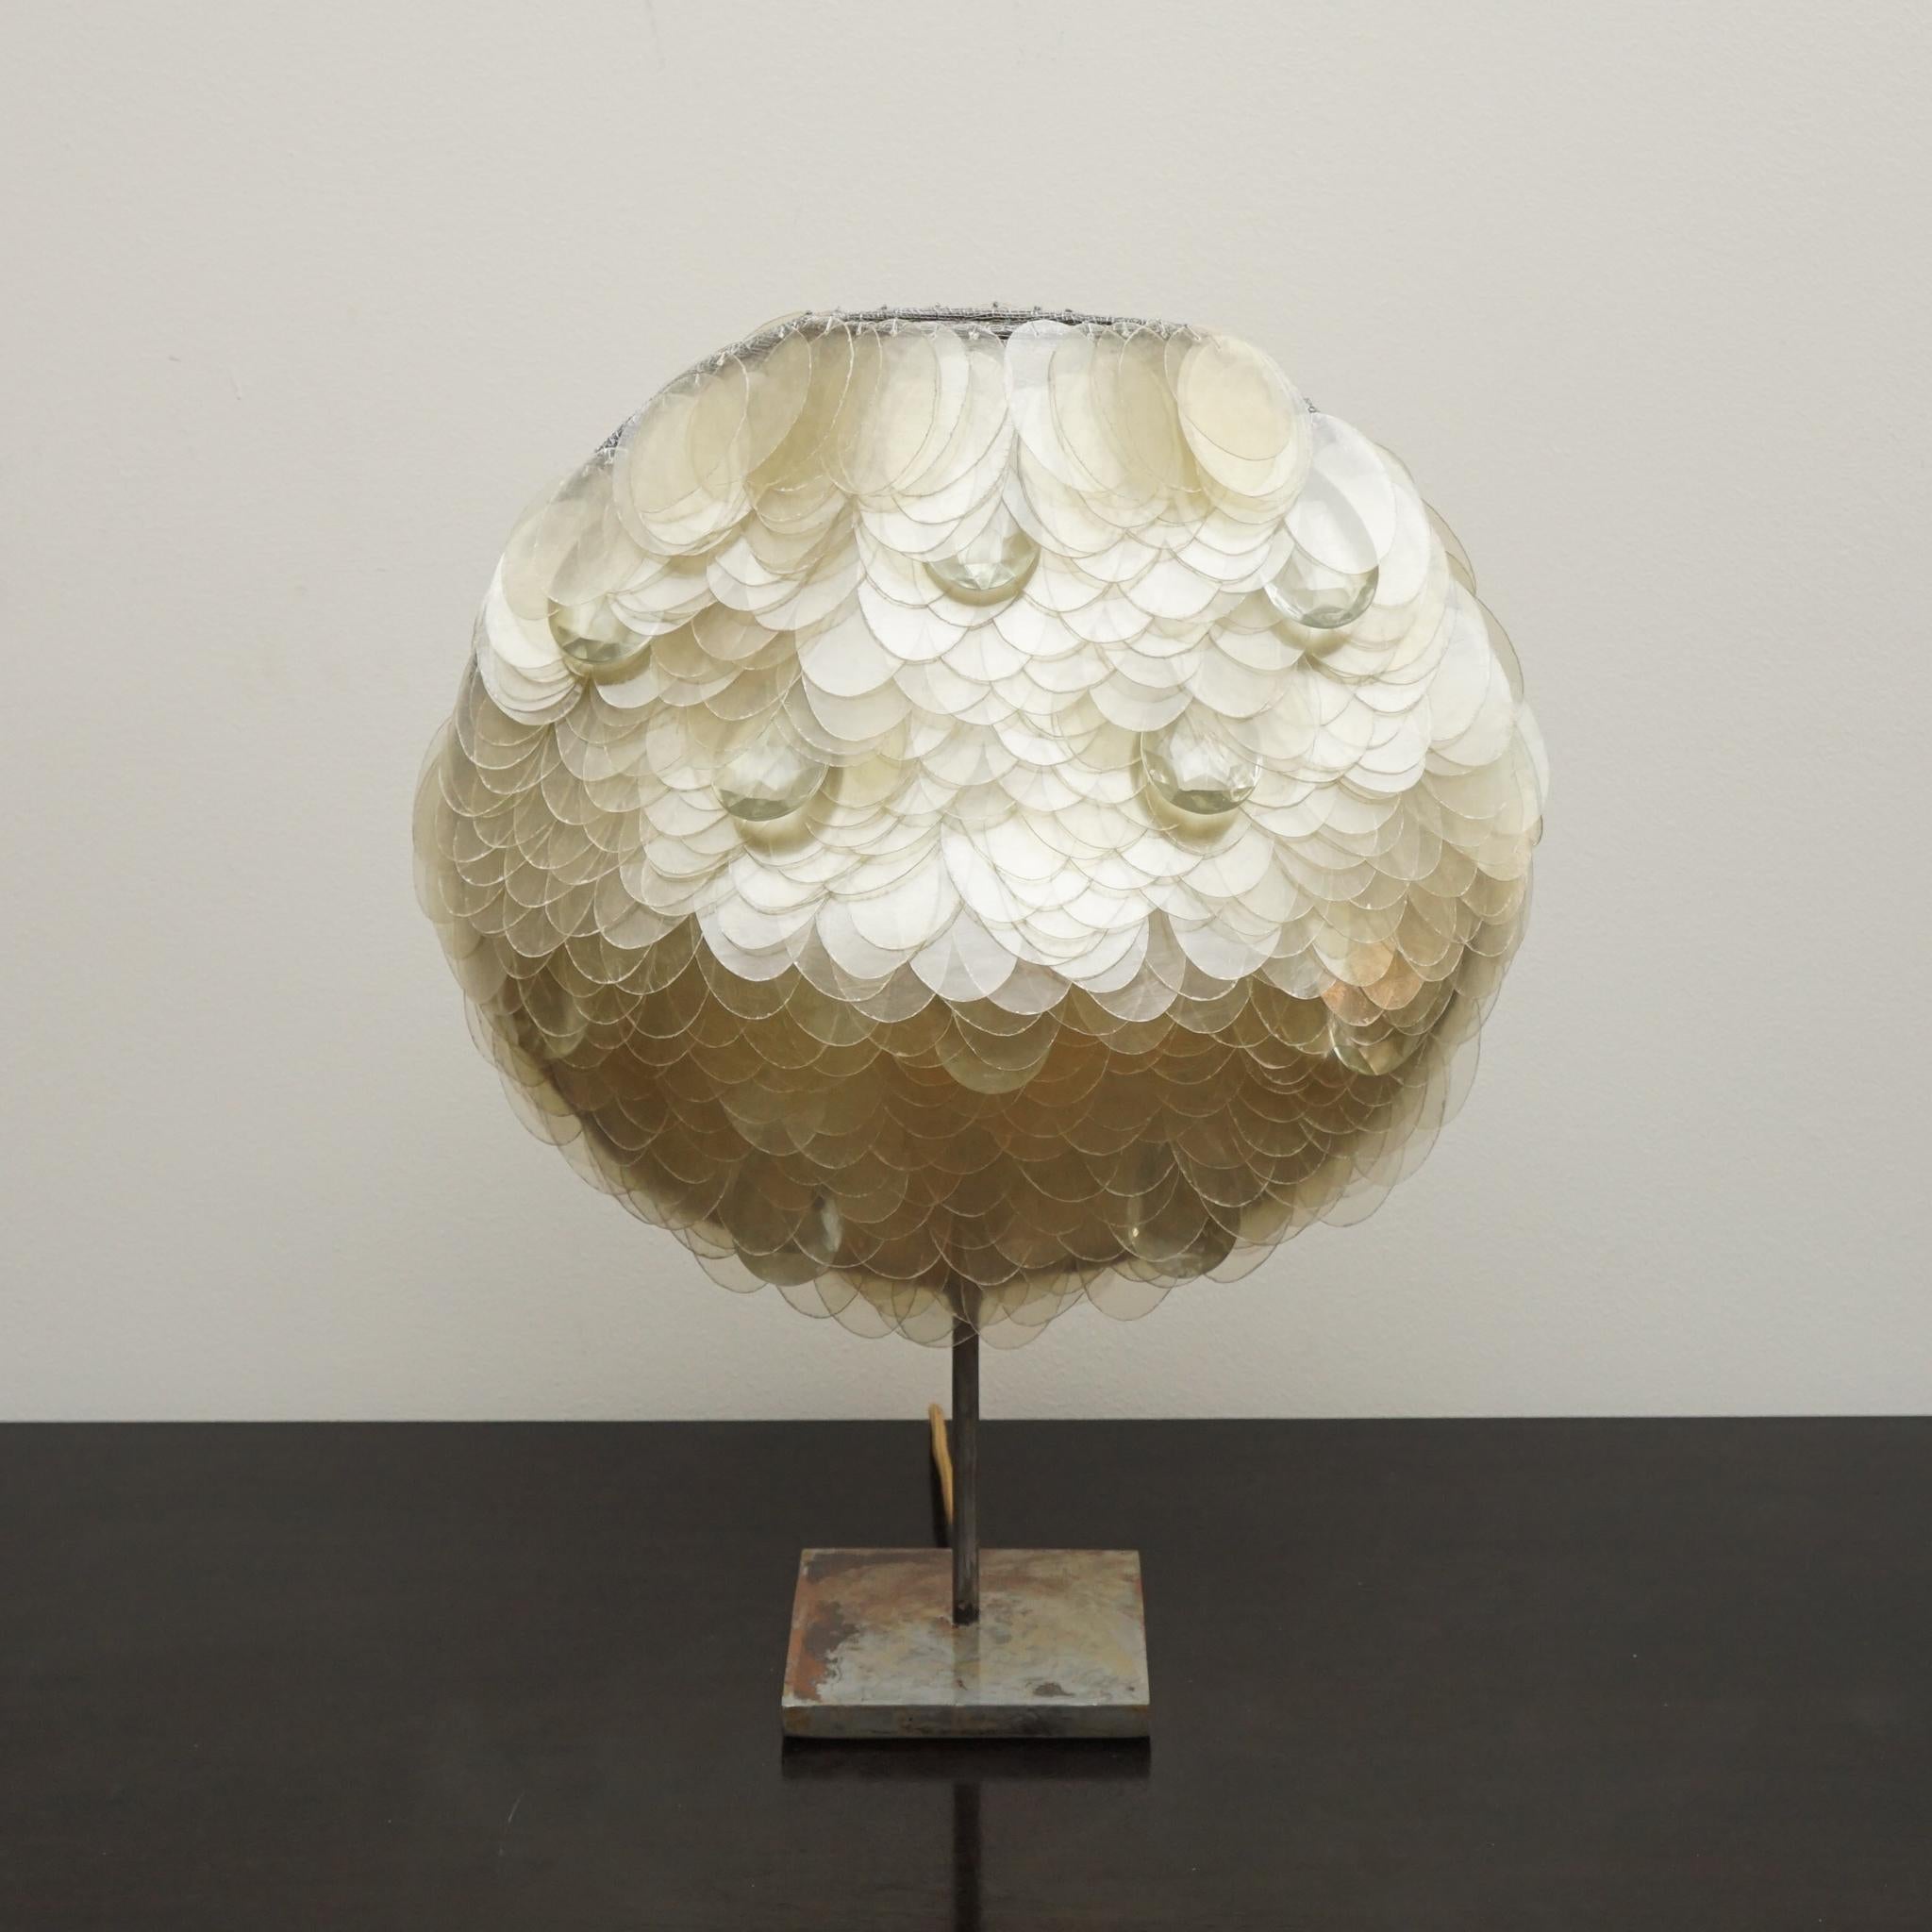 La lampe de table Ritagli, présentée ici, est la création de la designer italienne Valentina Giovando. Dotée d'un abat-jour composé d'écailles en fibre de verre, chacune individuellement découpée à la main et cousue à la base en fer, la lampe